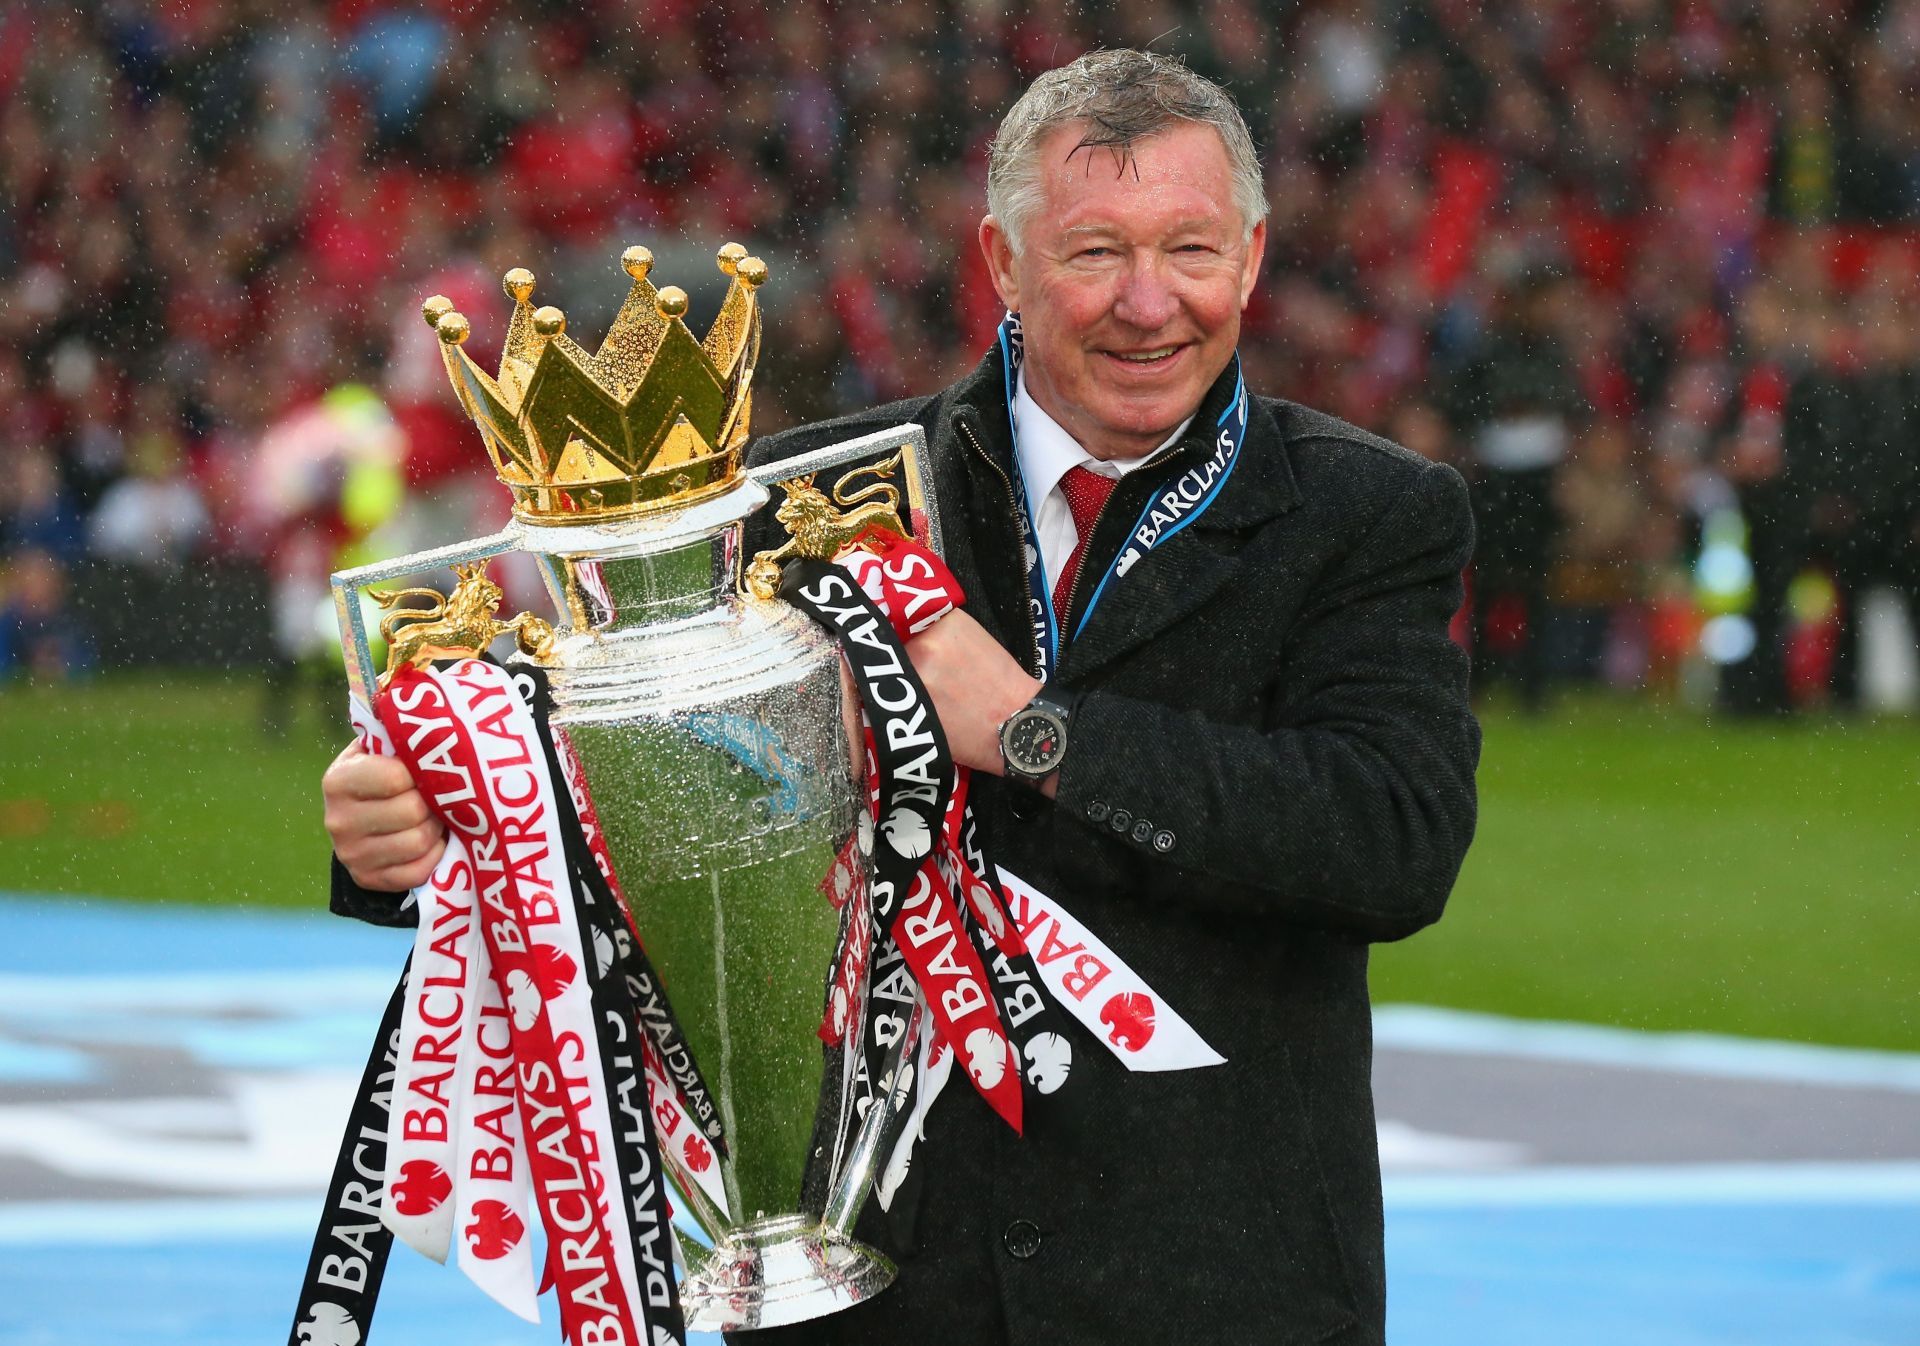 Sir Alex Ferguson poses with the Premier League trophy